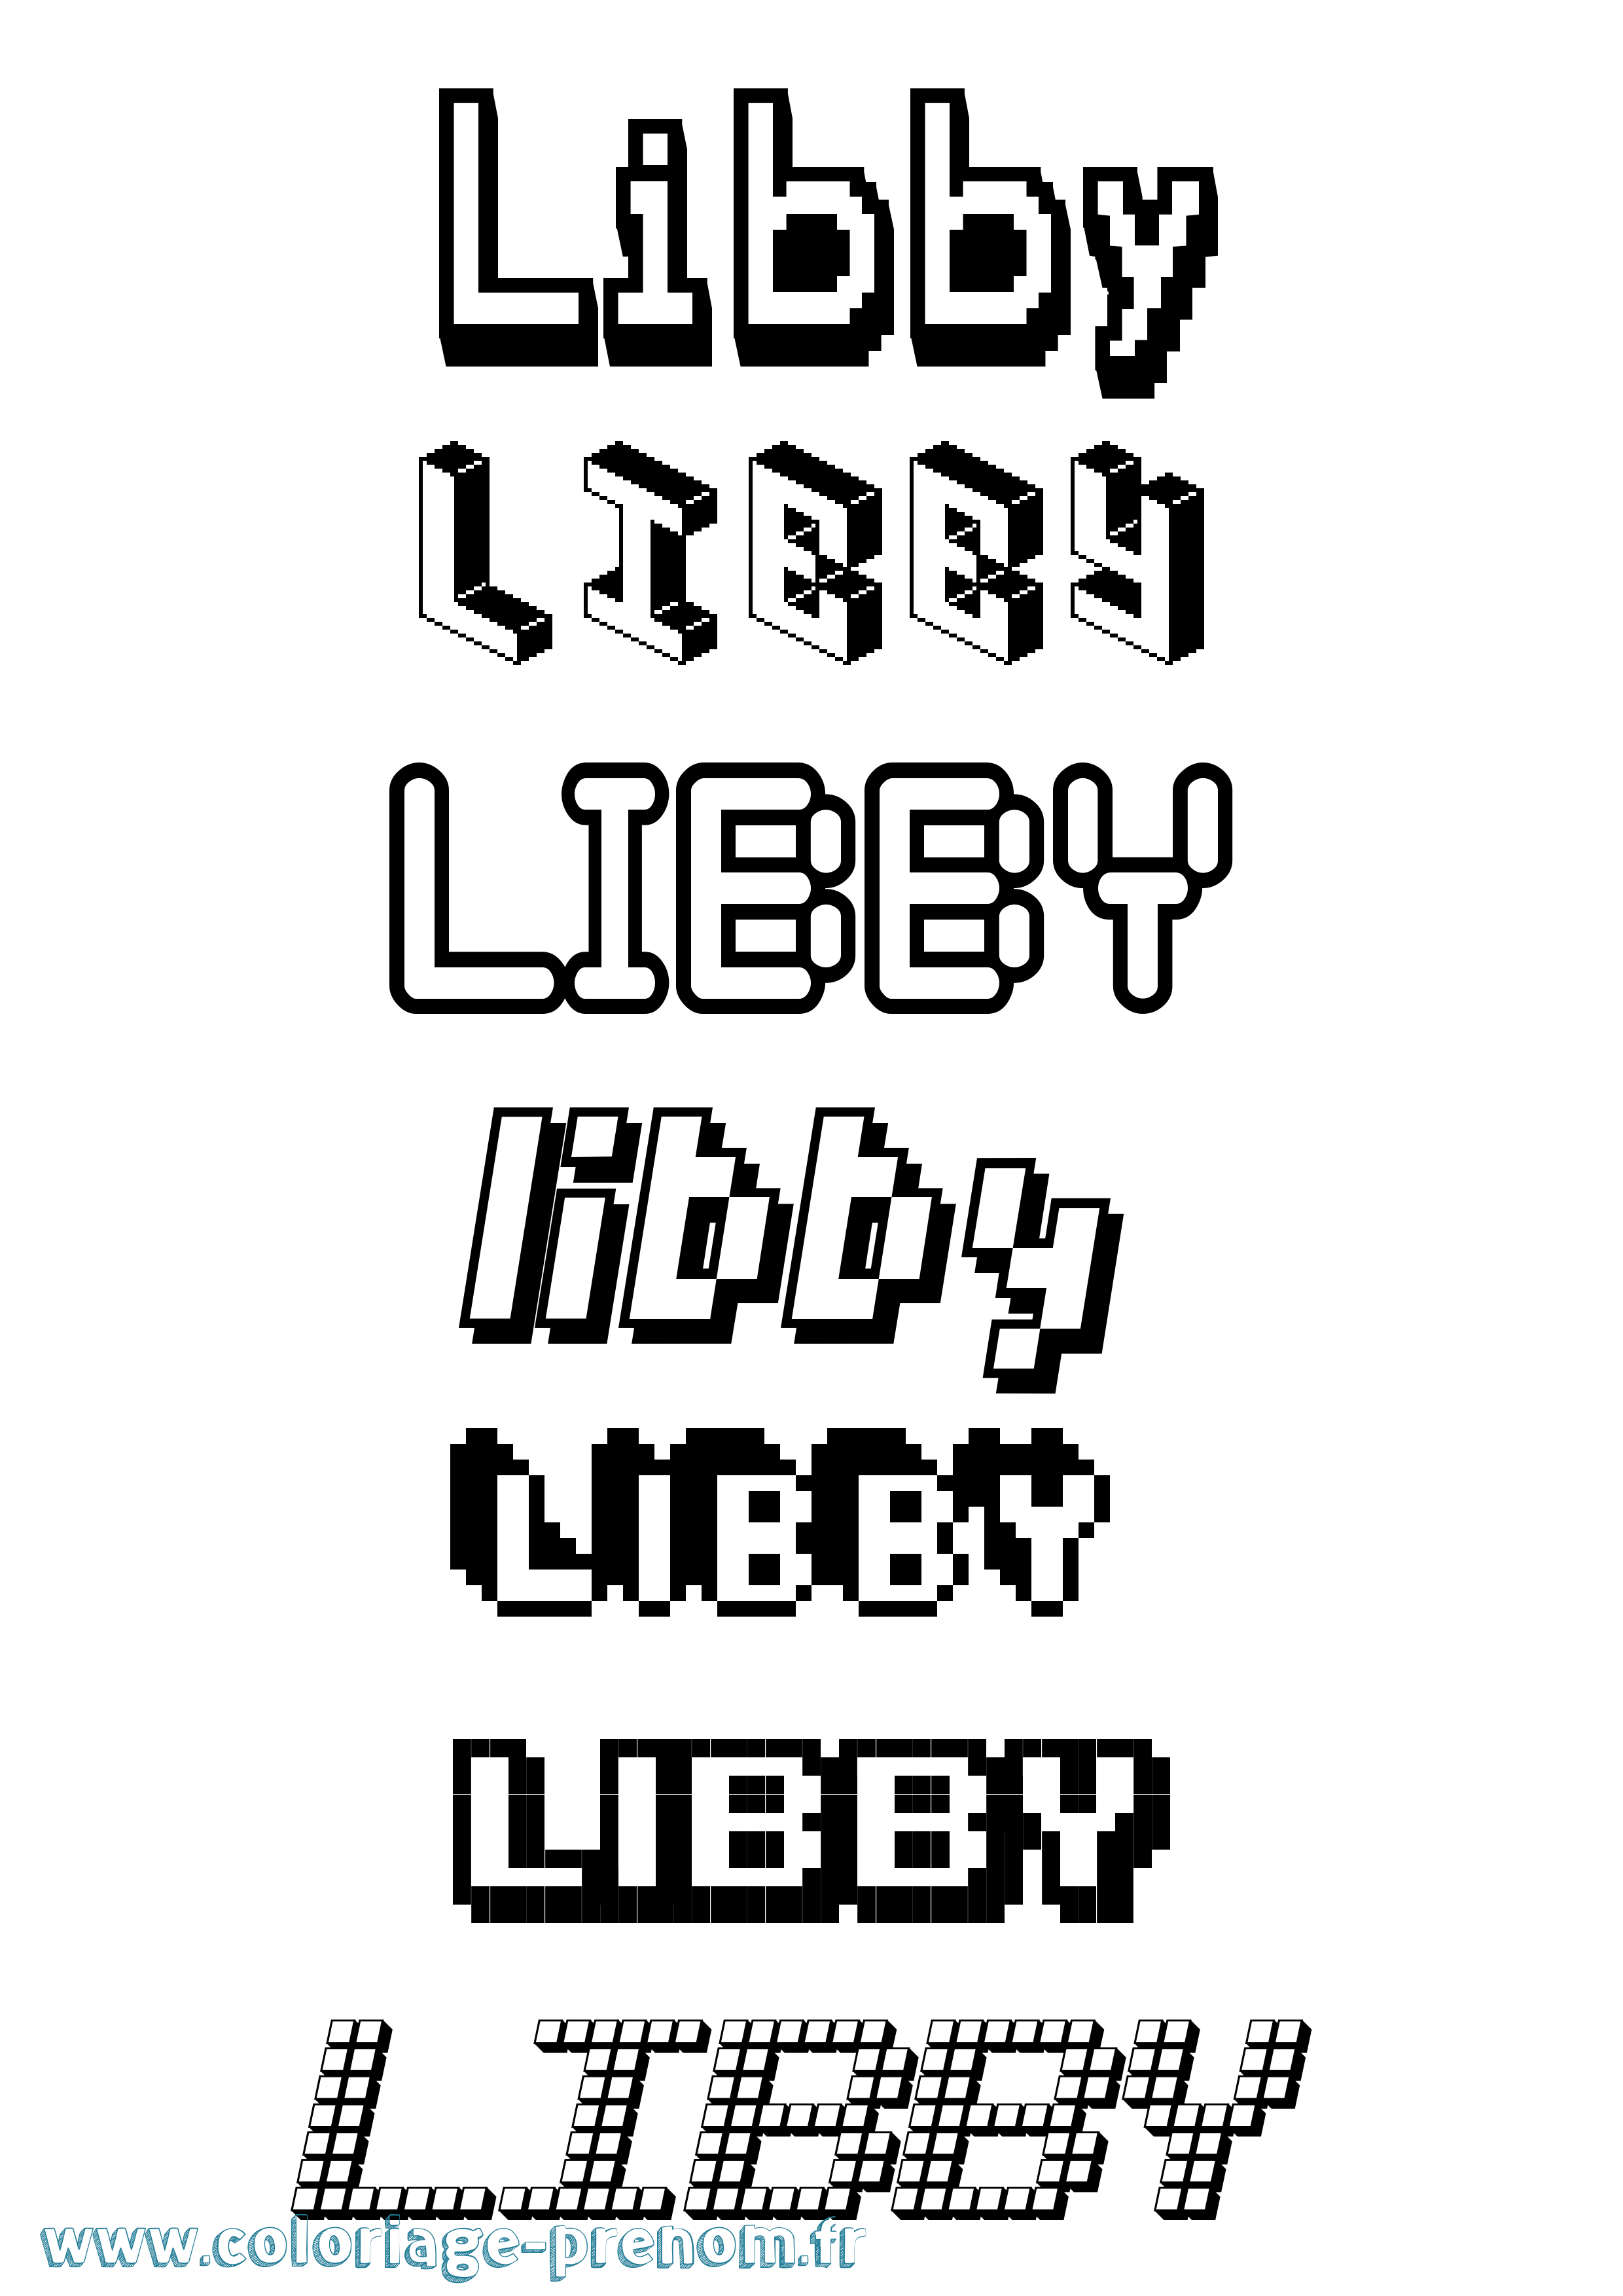 Coloriage prénom Libby Pixel